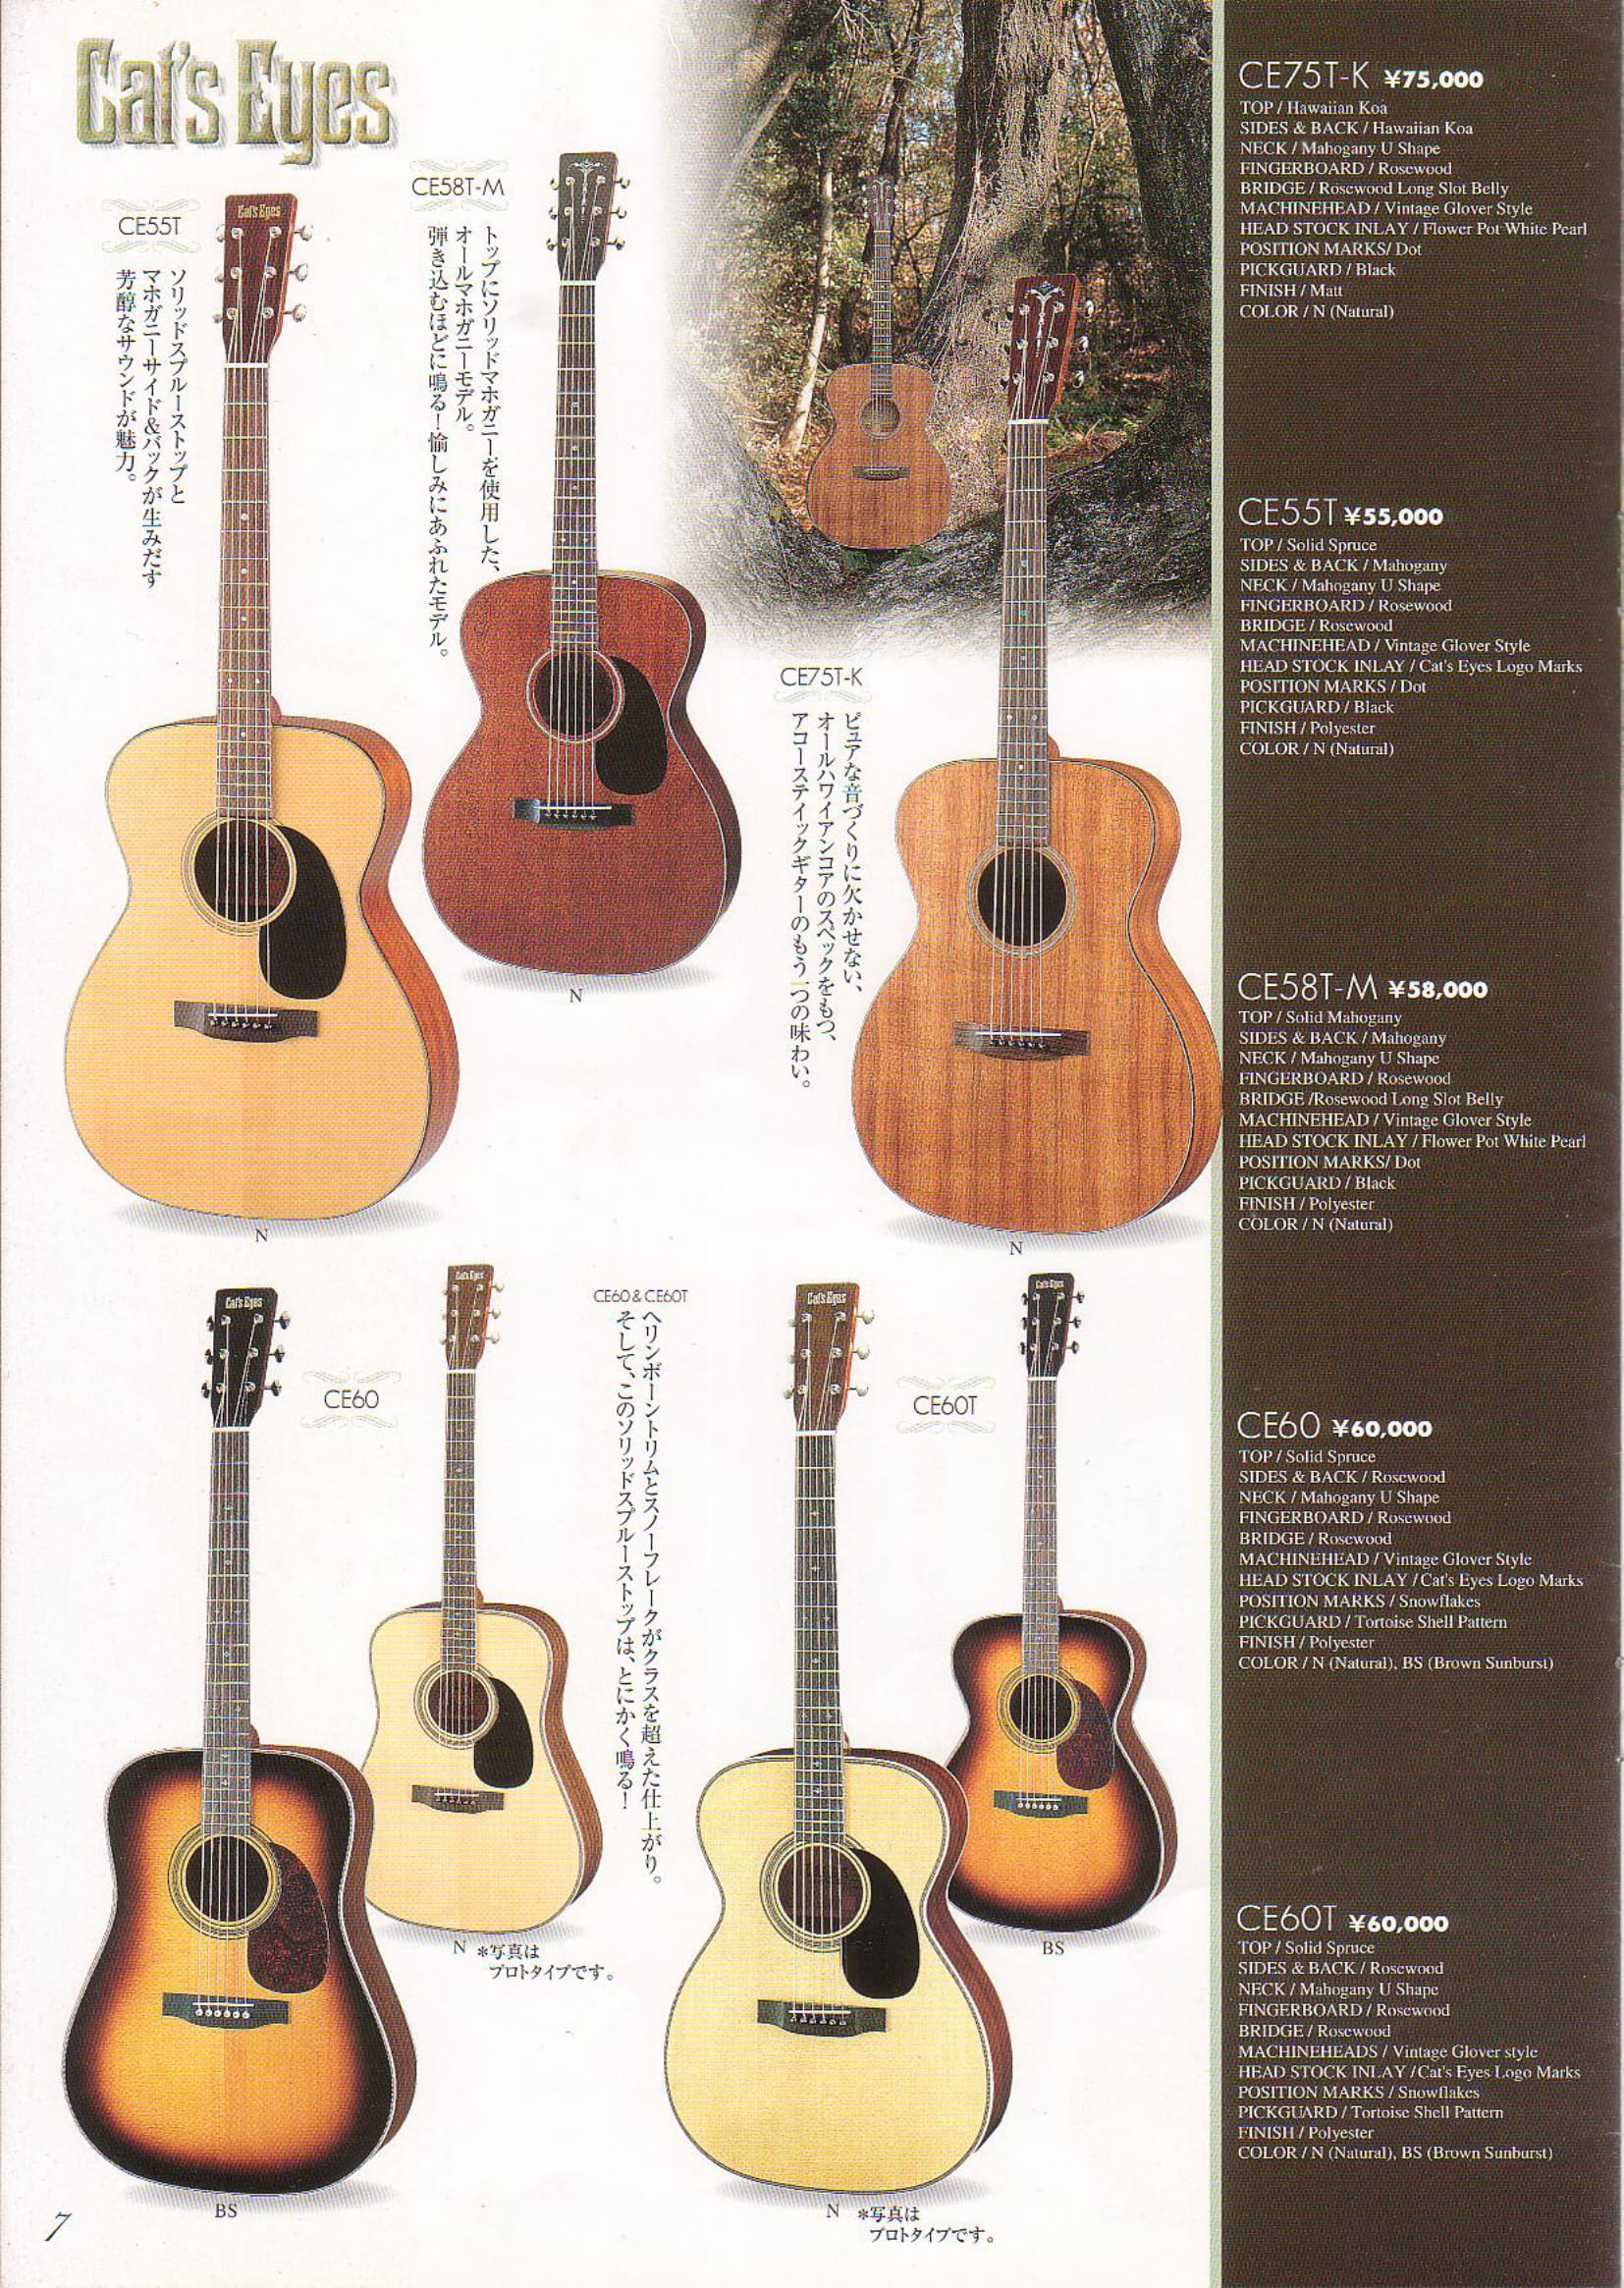 2001年vol.7 TOKAIアコースティックギター（Cat’s Eyes）カタログ - ビンテージギターカタログ